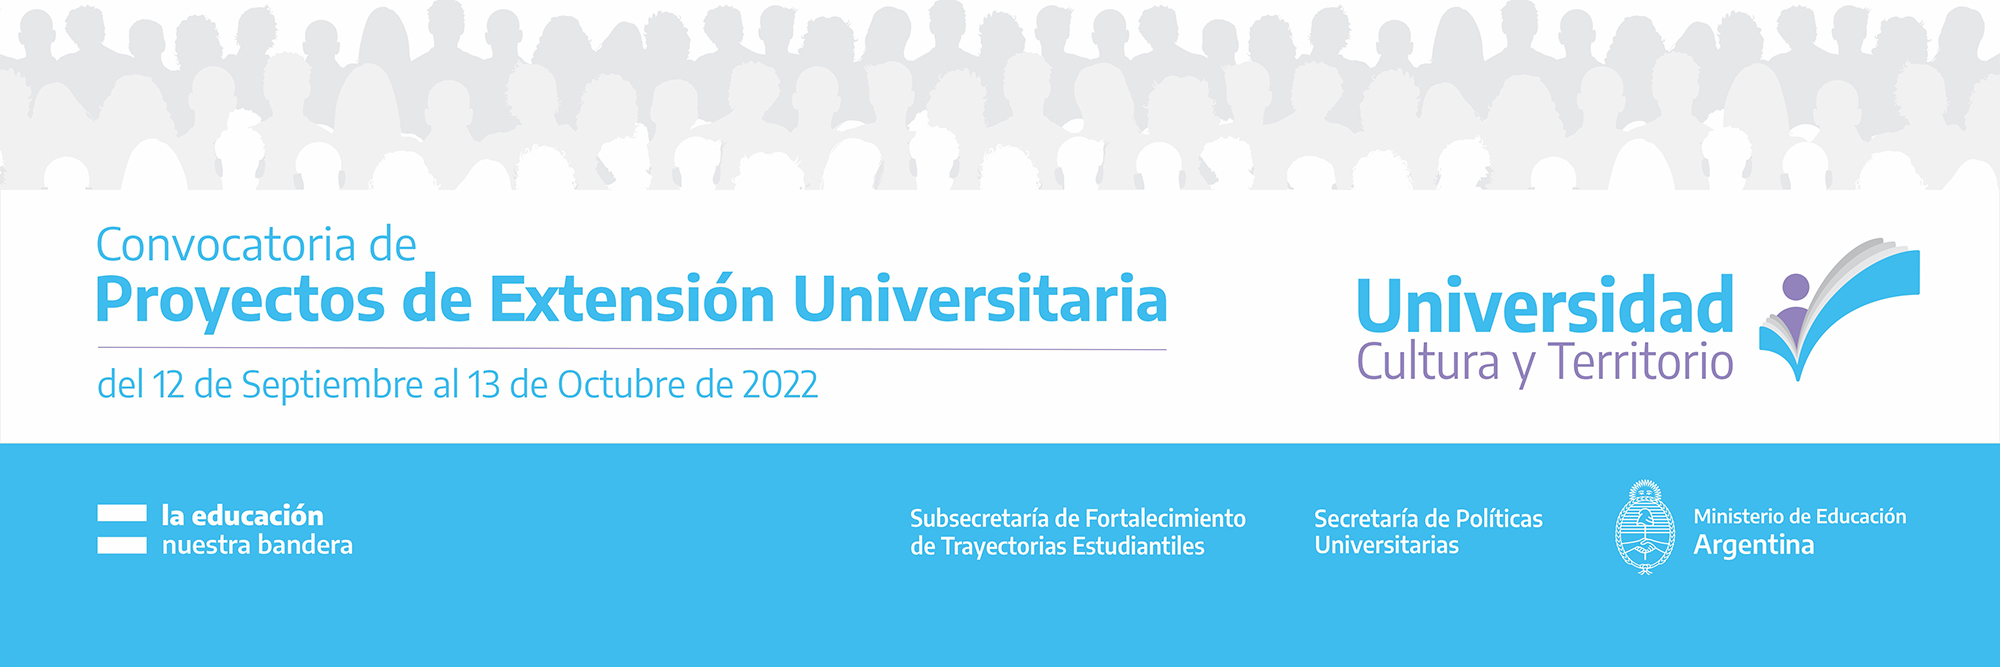 CONVOCATORIA DE PROYECTOS DE EXTENSIÓN: “UNIVERSIDAD, CULTURA Y TERRITORIO 2022”